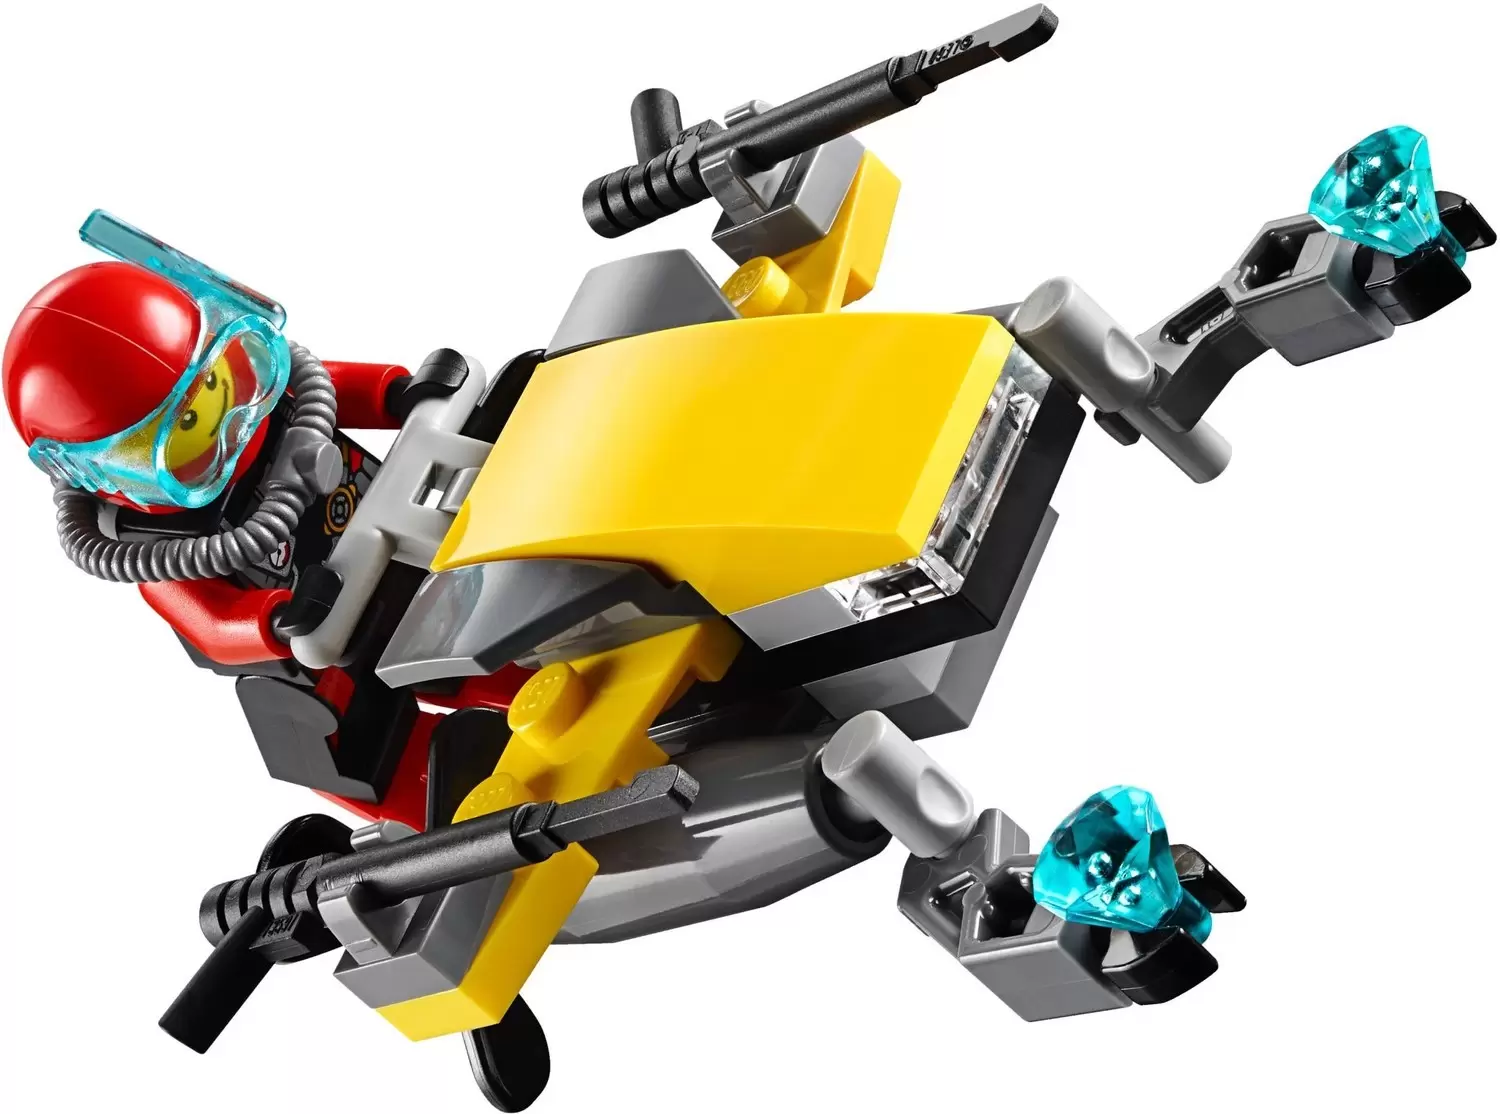 LEGO CITY - Deep Sea Scuba Scooter